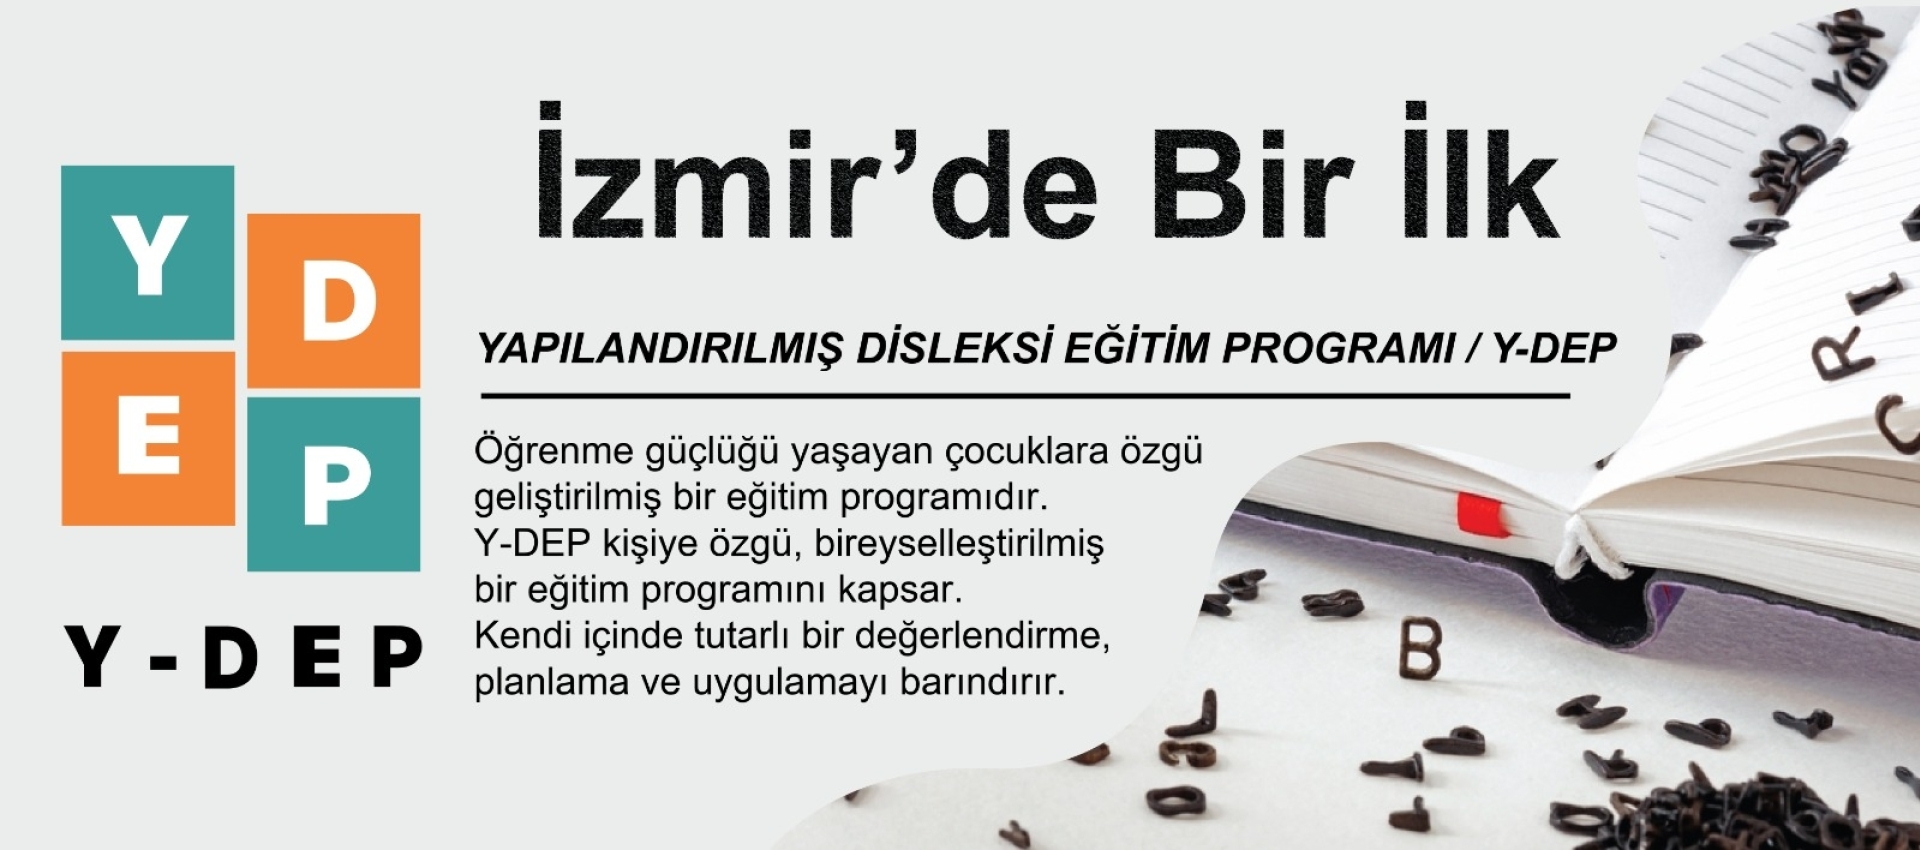 Y-DEP (Yapılandırılmış Disleksi Eğitim Programı) - İzmir Özel Eğitim Merkezi